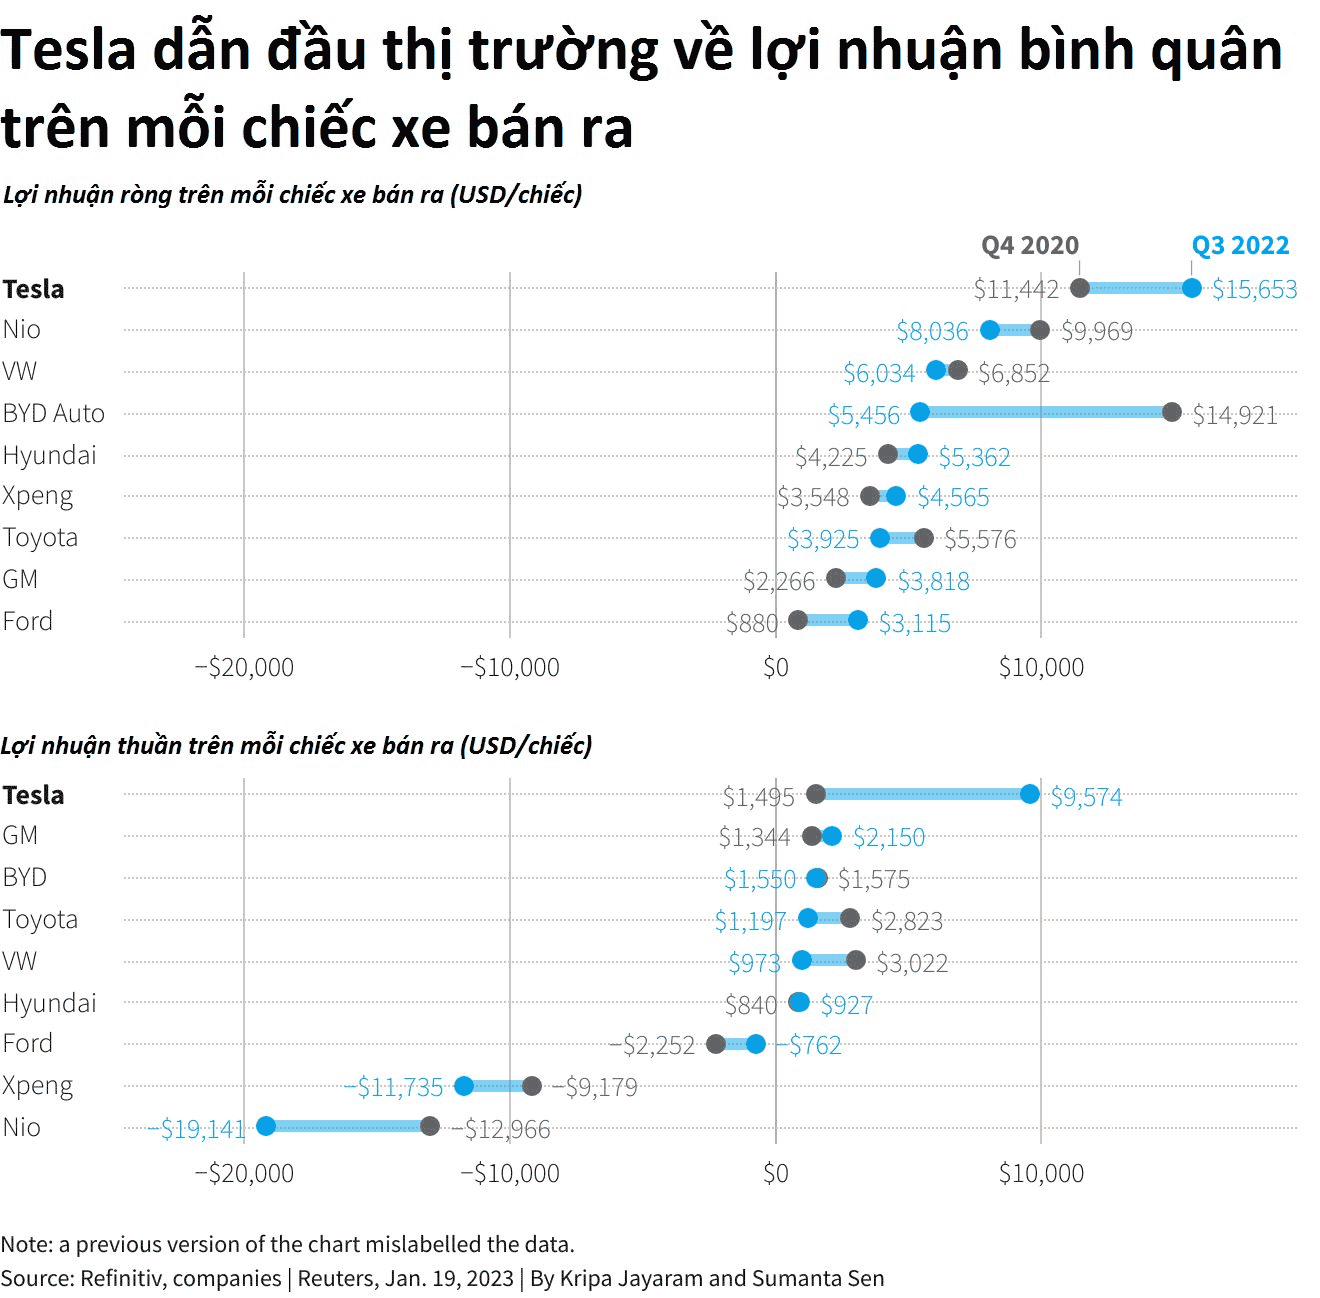 Động thái của 'gã nhà giàu' Tesla khiến các công ty xe điện nhỏ lo sợ: Sẵn sàng hy sinh lợi nhuận để hạ giá bán, dìm đối thủ tới chết - Ảnh 3.